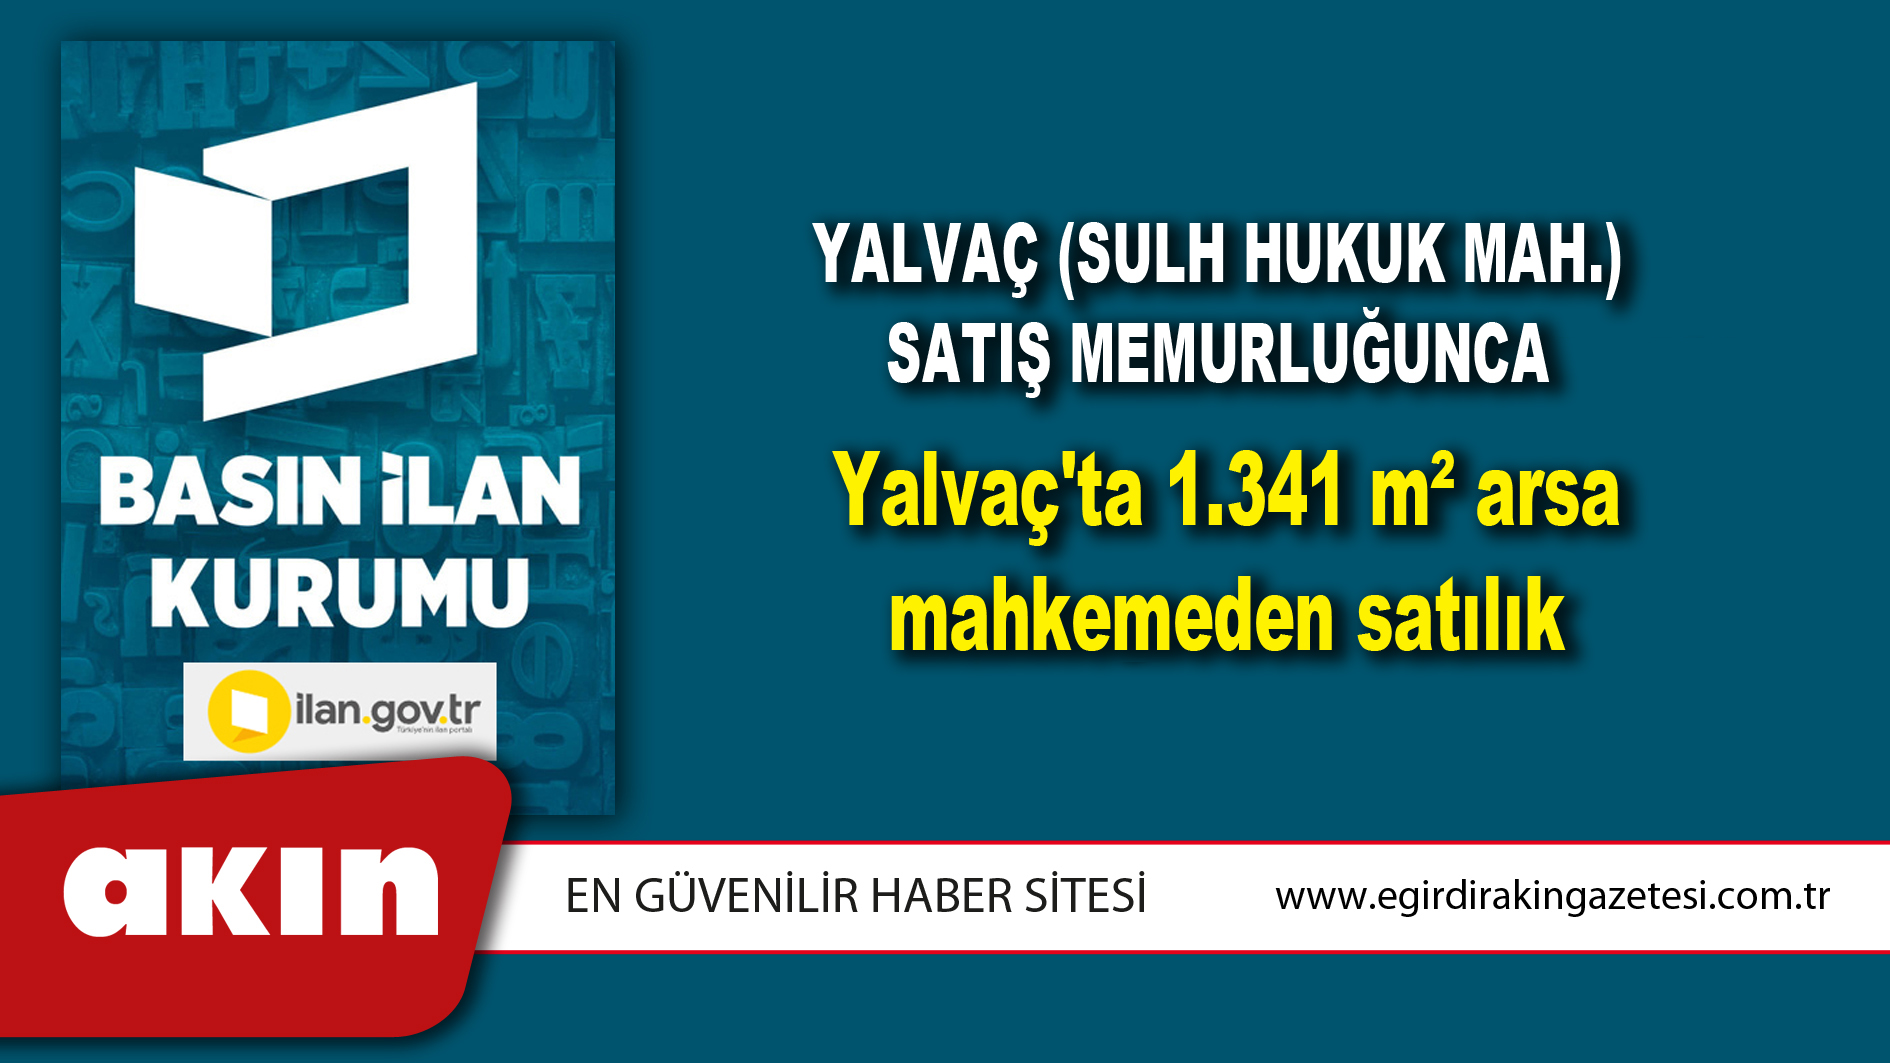 Yalvaç (Sulh Hukuk Mah.) Satış Memurluğunca Yalvaç'ta 1.341 m² arsa mahkemeden satılık